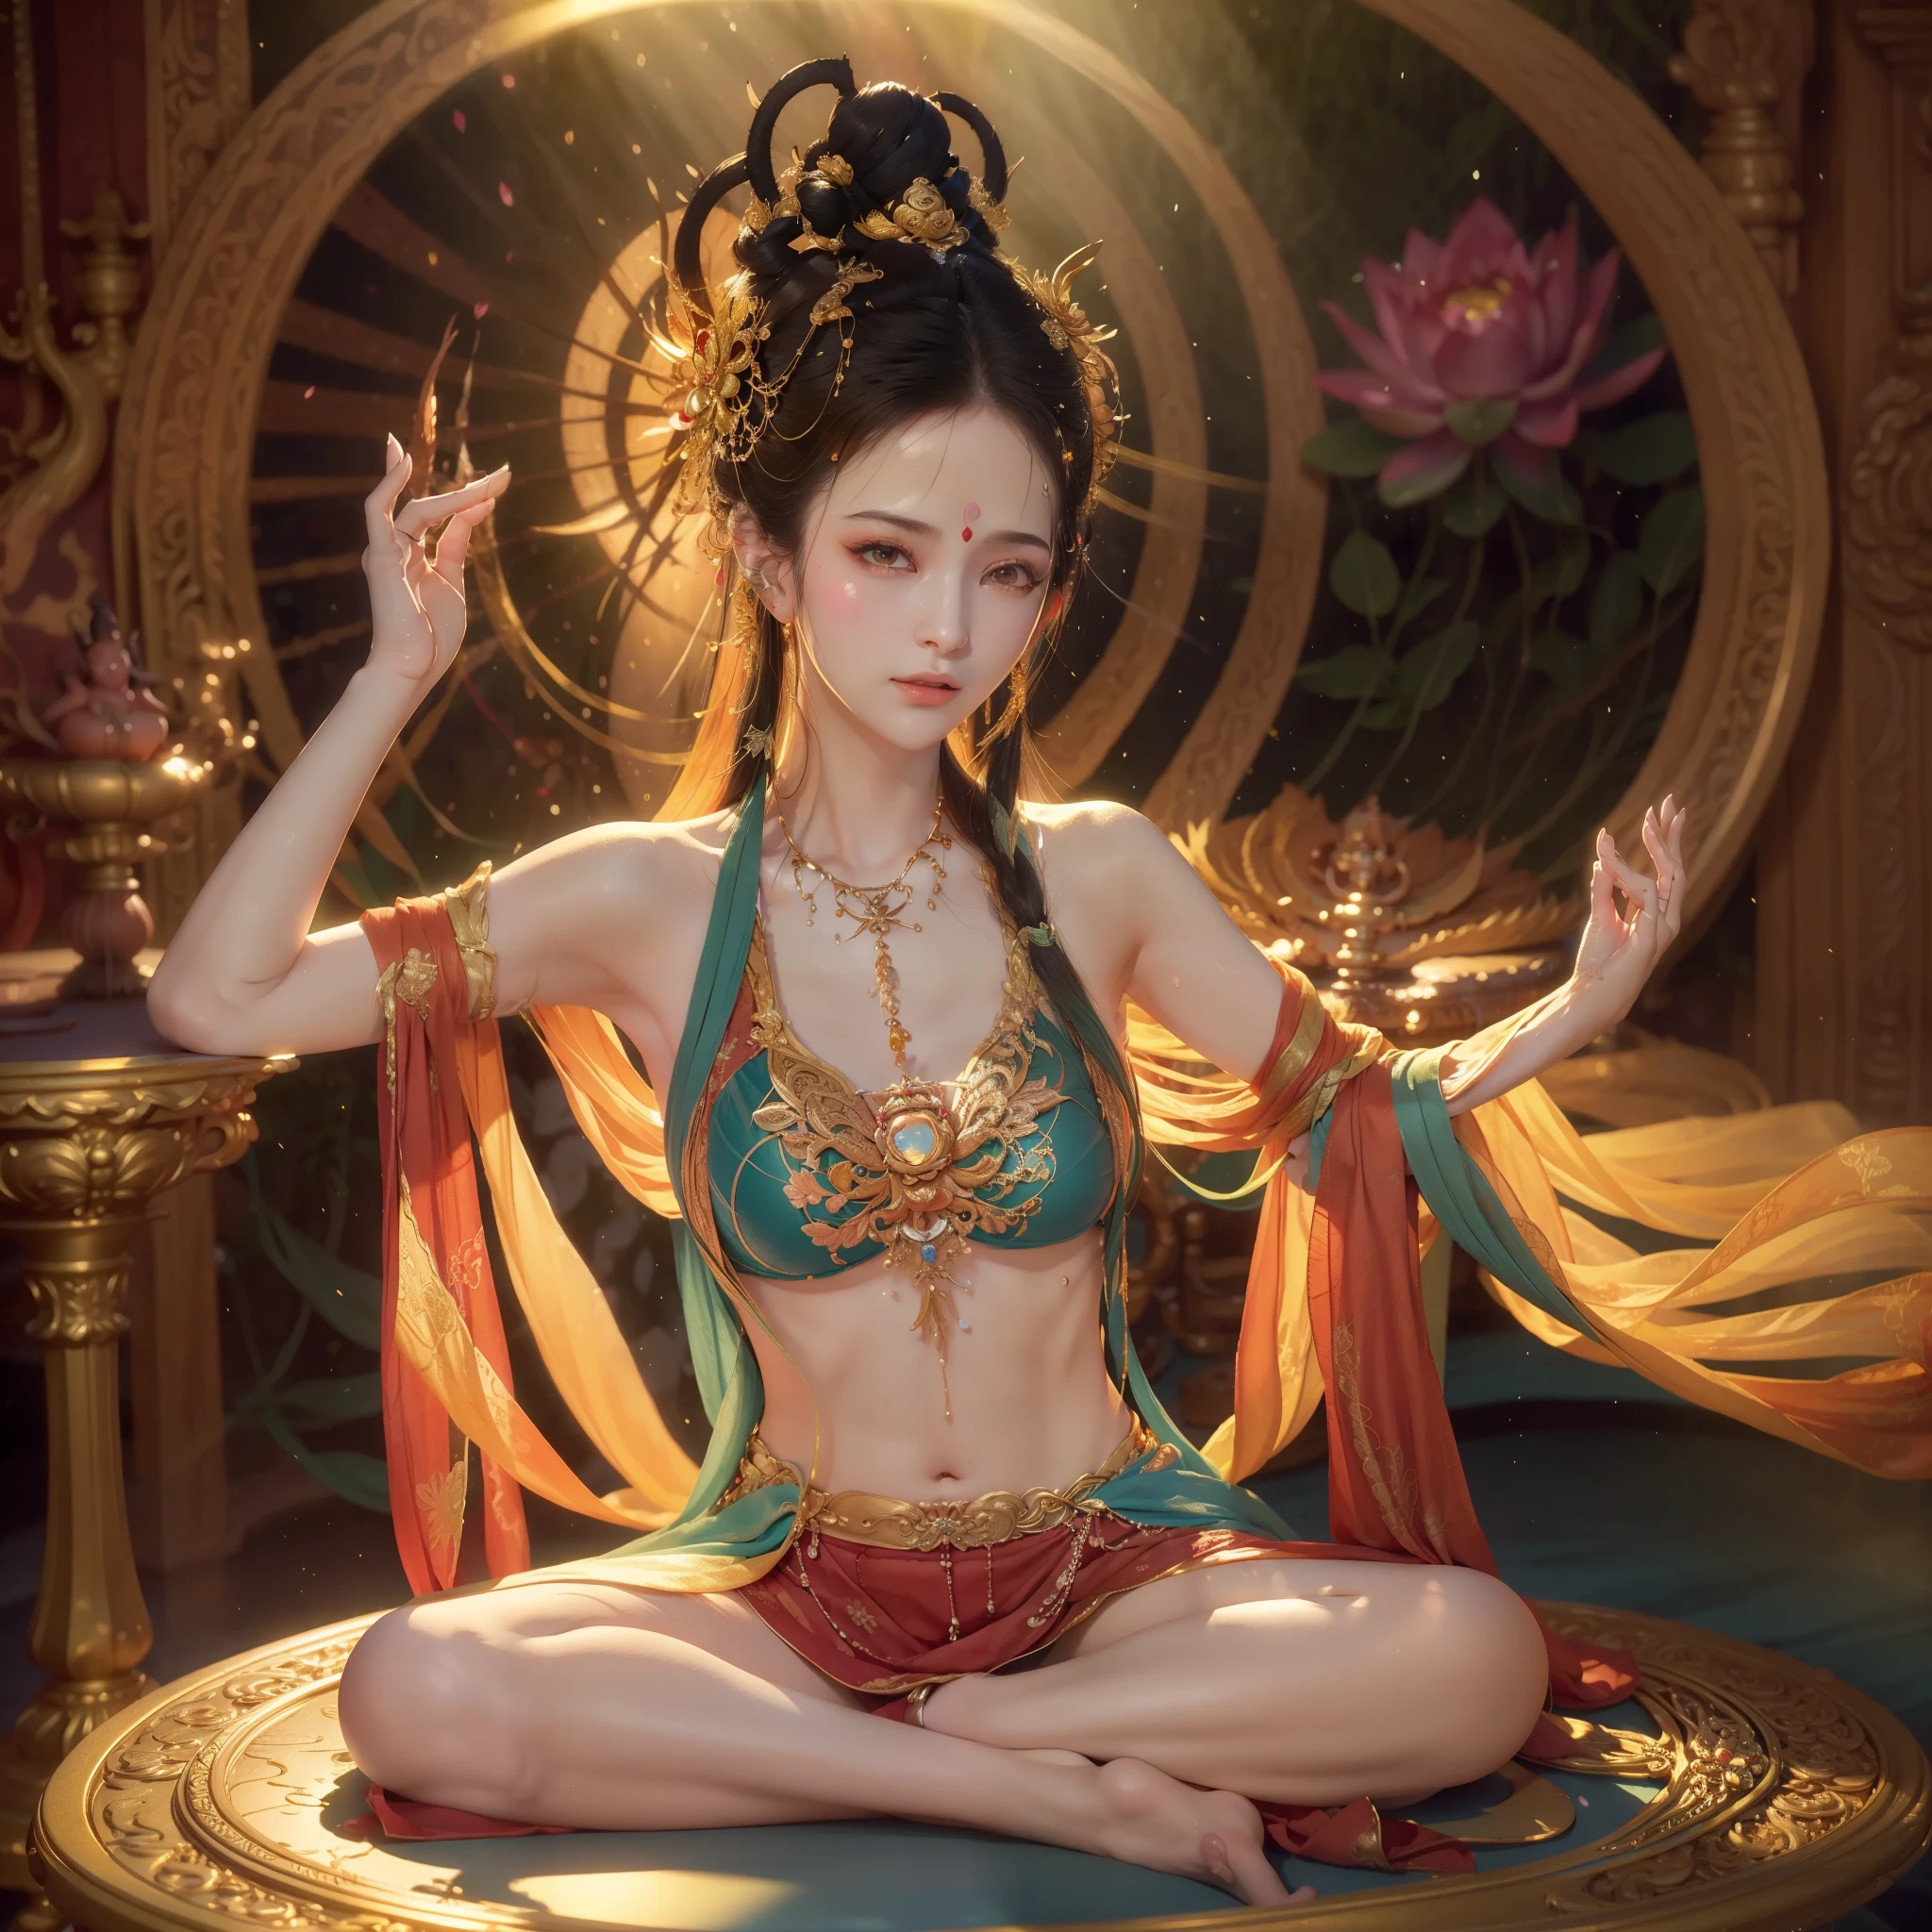 Schweißgetränkter tantrischer Avalokiteshvara, Setzen Sie sich mit gekreuzten Beinen auf den Altar, um tief zu meditieren，（Yoga Mudra）, (Machen Sie Yoga-Lotus-Pose), (alle Einzelheiten, schönes Gesicht), (detaillierte Augen, detaillierte Lippen), (heiterer Ausdruck), (lange Wimpern), (ruhige Atmosphäre), (sanftes warmes Licht), [Friedlich], [Harmonie], [friedlich], (beste Qualität, 4K-Auflösung, Eine hohe Auflösung), ultra-detailliert, (Realistisch:1.37), (lebendige Farben), (physikalisch basiertes Rendering), (Studiobeleuchtung), (Bokeh), (ätherisch), (spirituell).